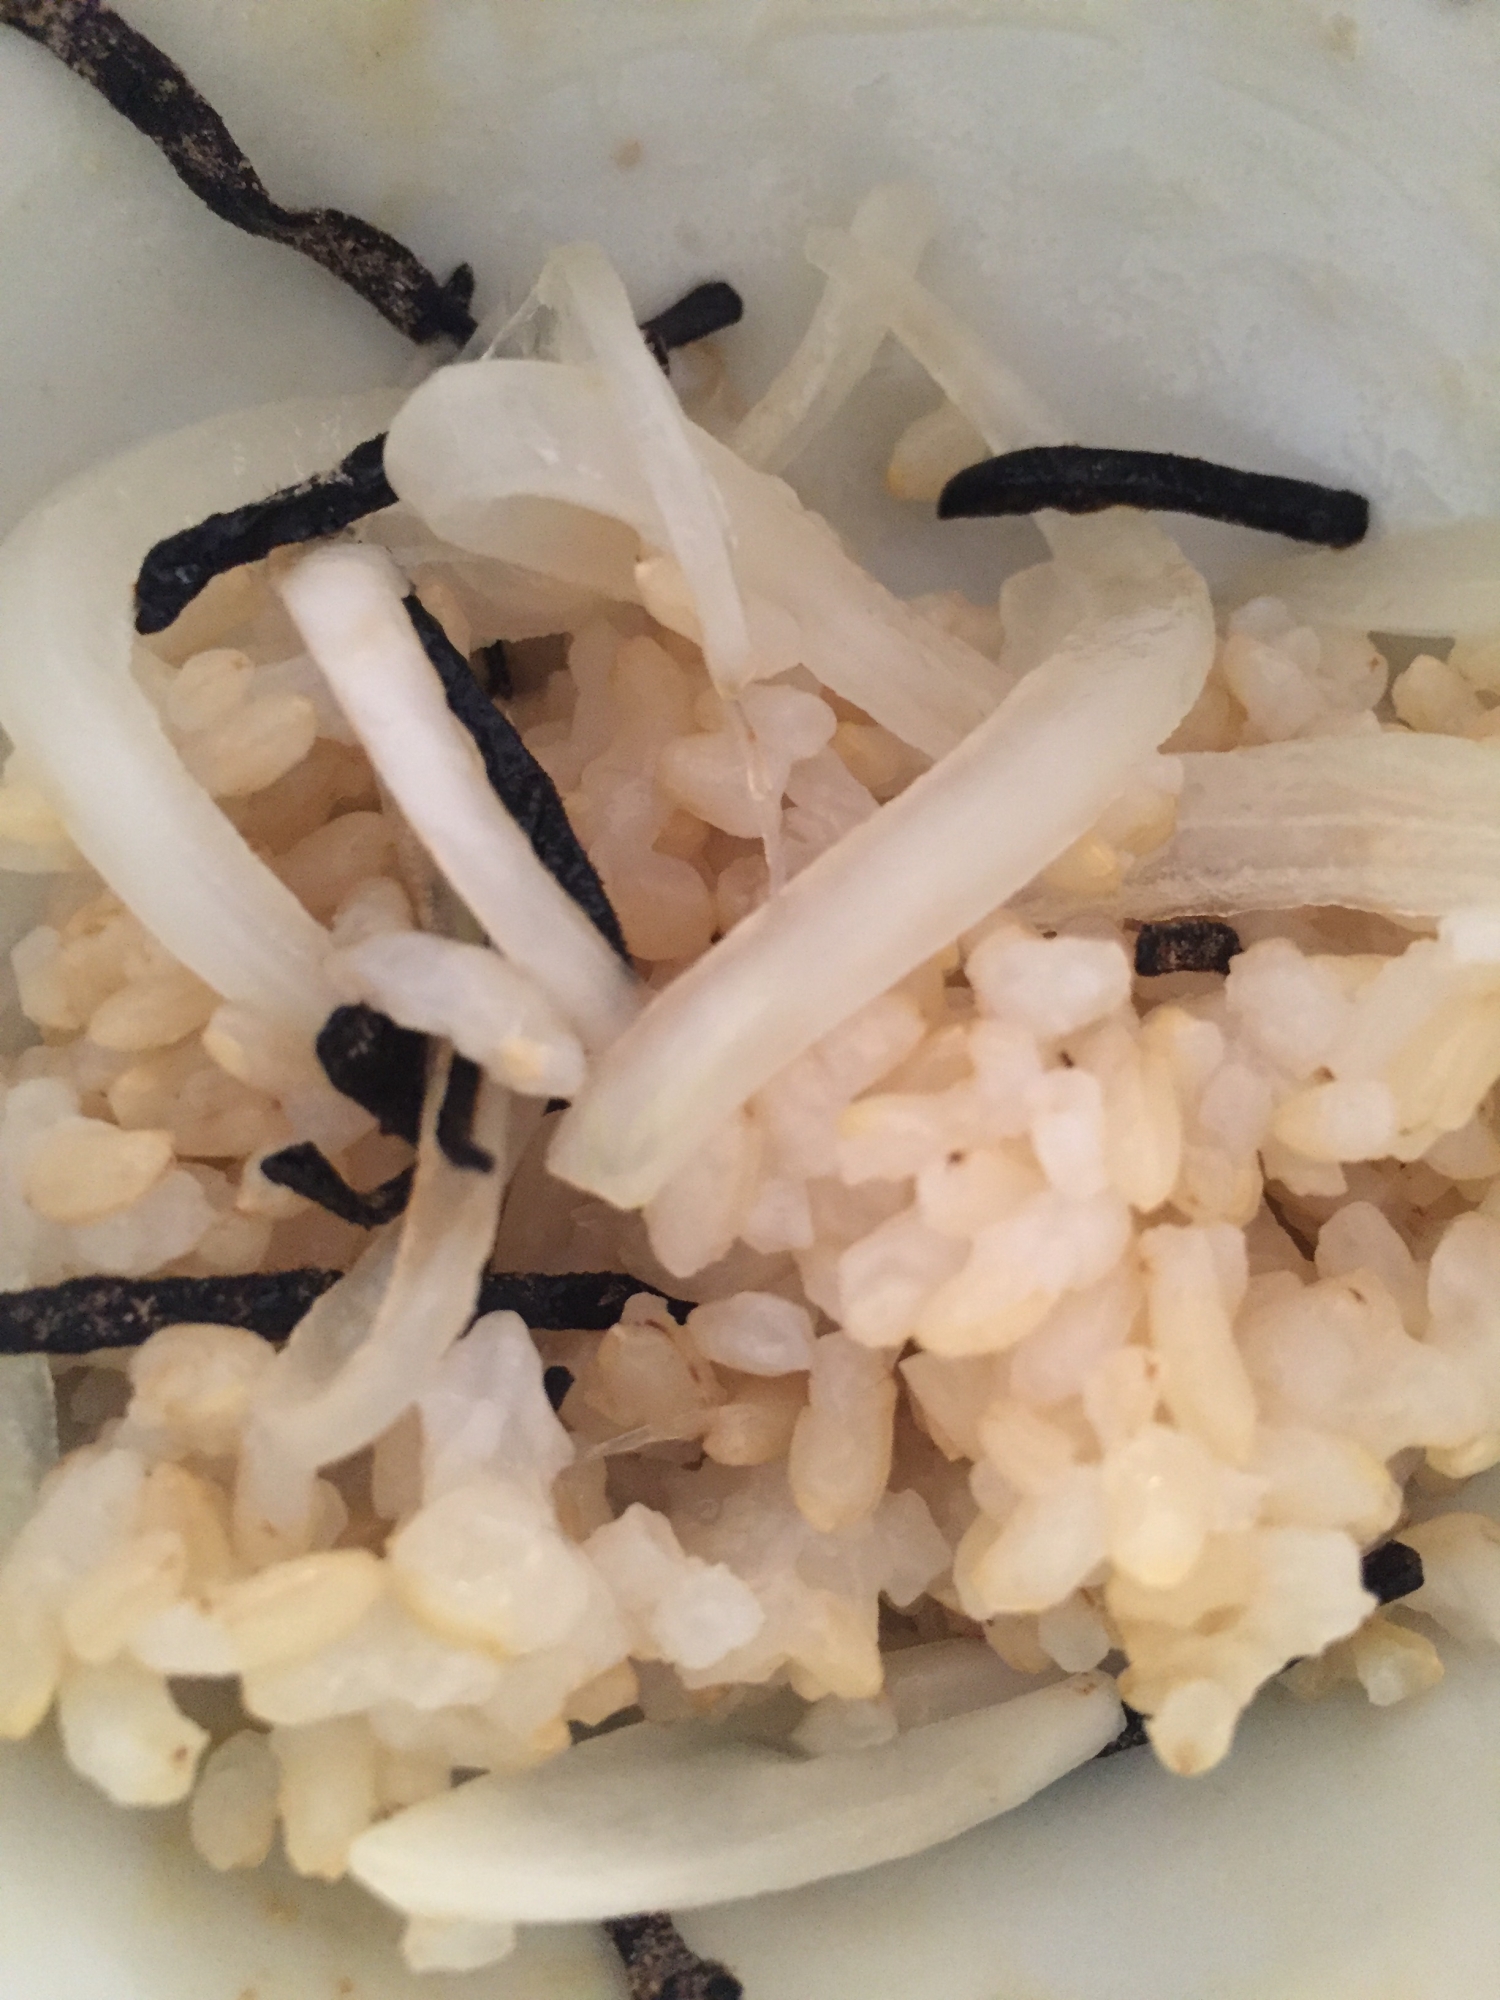 玉ねぎと塩昆布を混ぜた塩玄米チャーハン